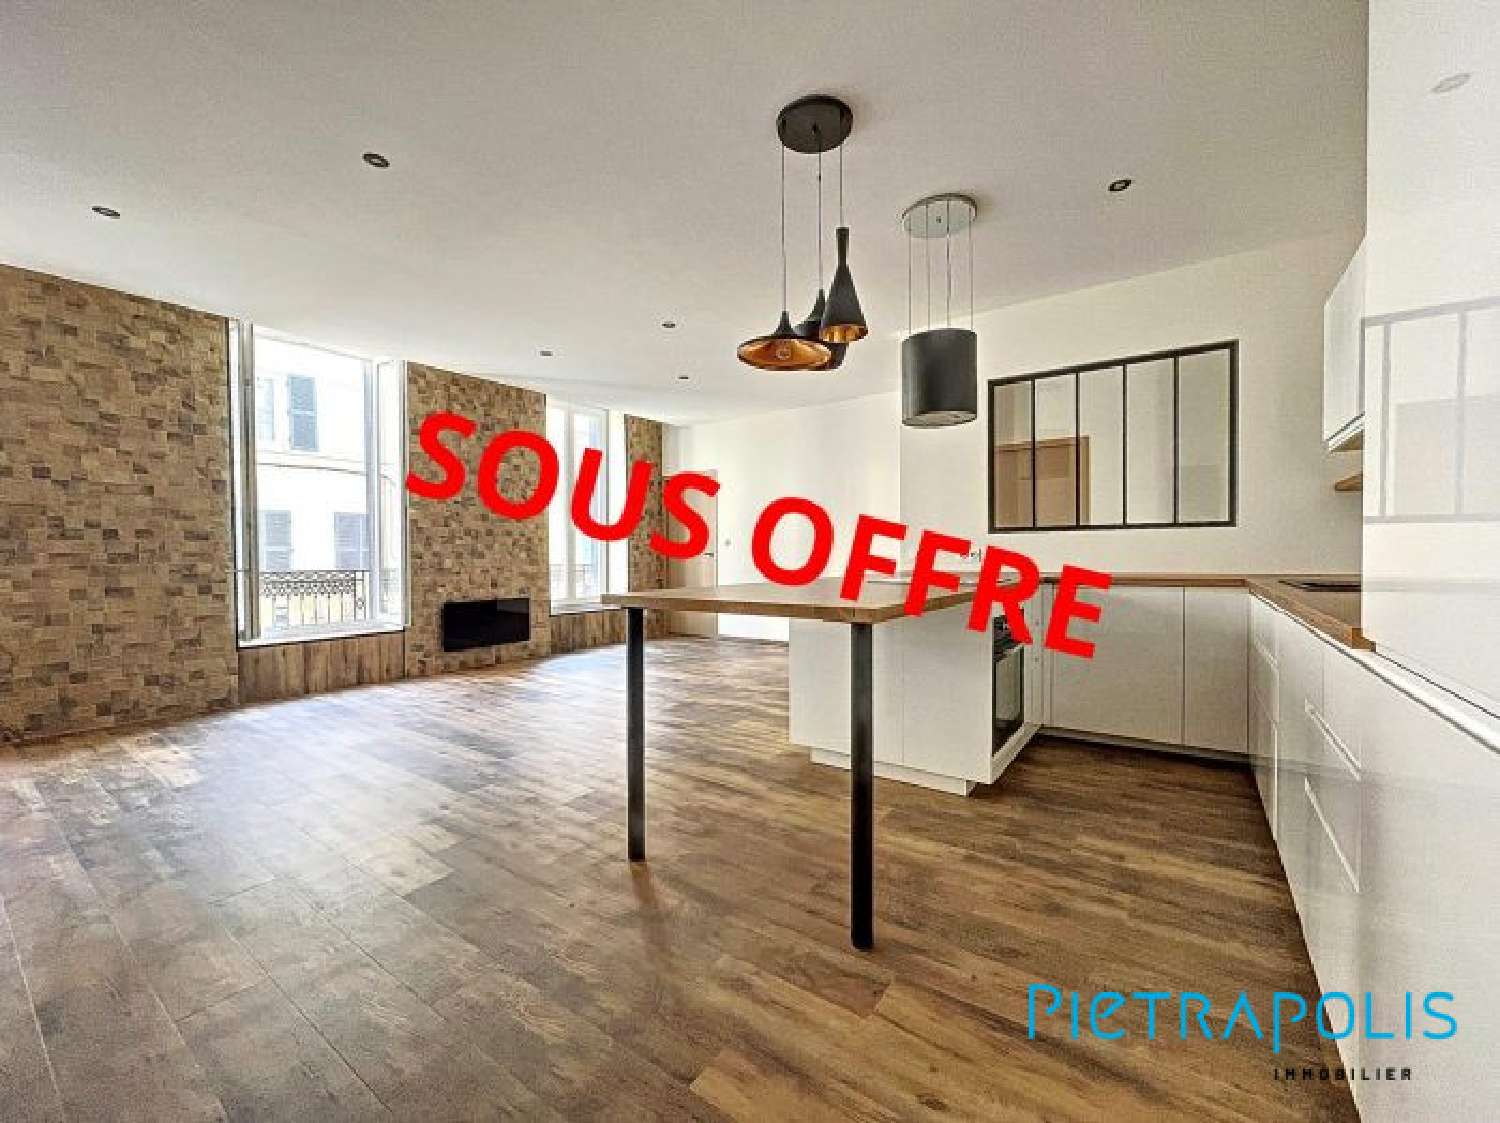  à vendre appartement Tarare Rhône 1